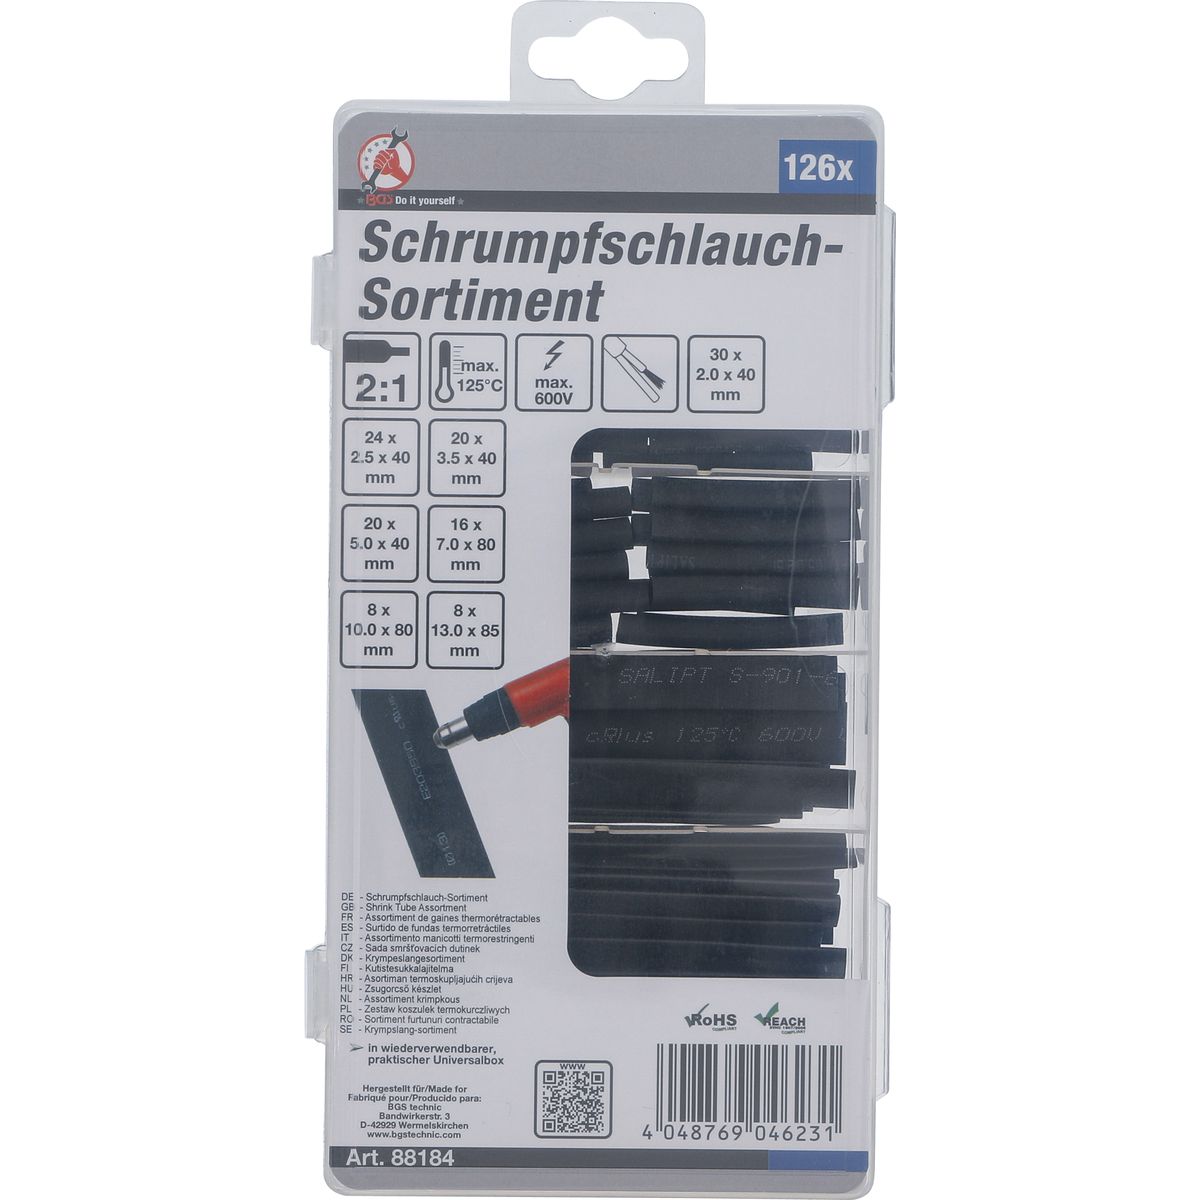 Schrumpfschlauch-Sortiment | schwarz | 126-tlg.